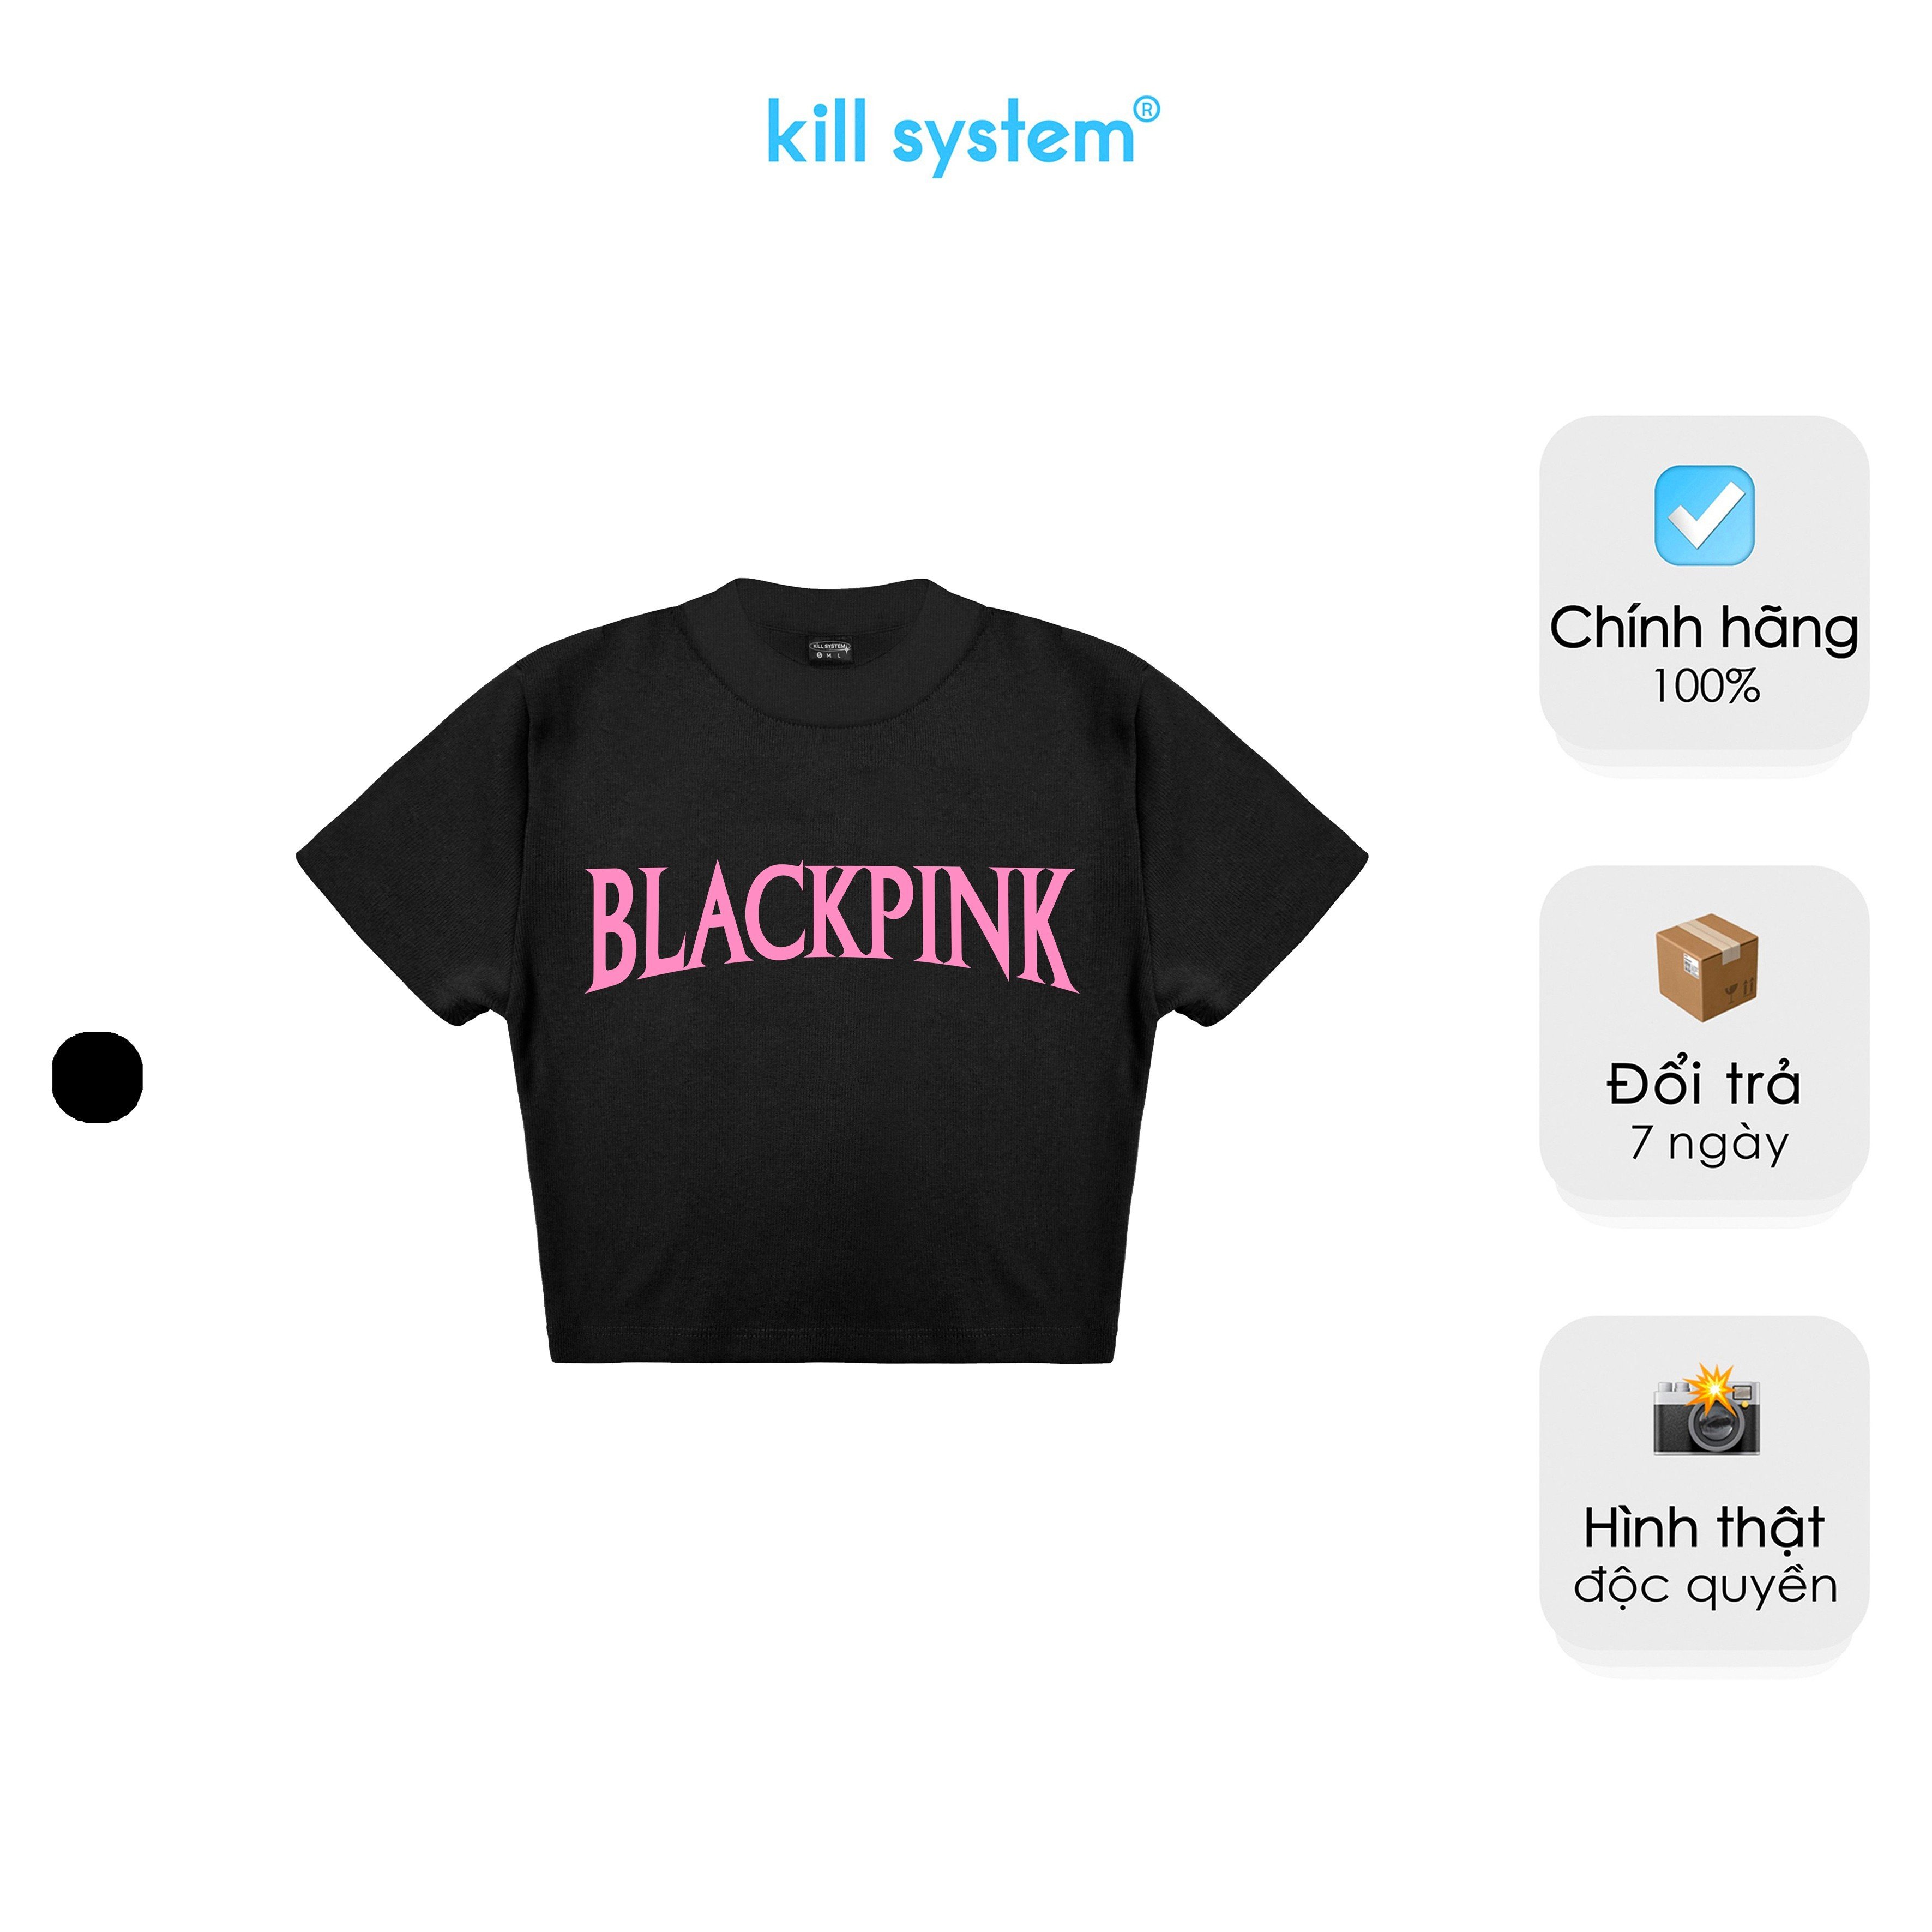 Áo thun croptop BLACKPINK Kill System tay ngắn hình in màu đen chất thun